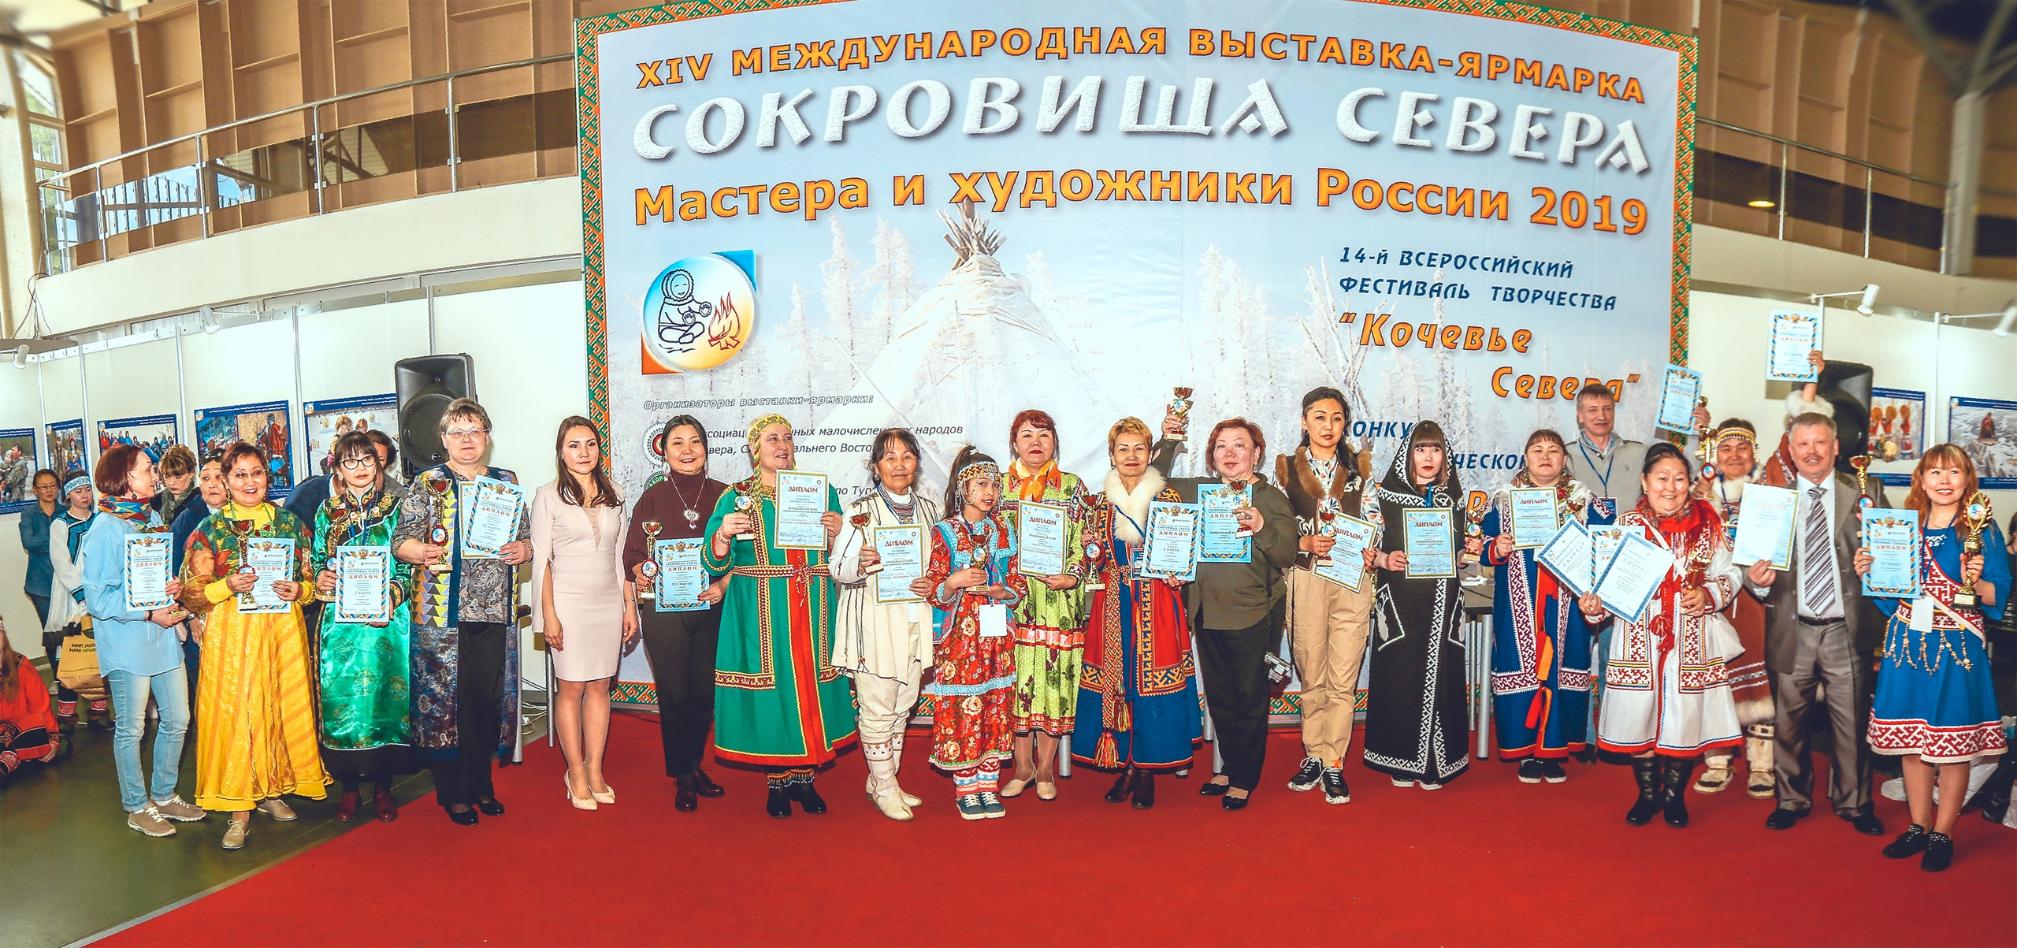 Представители Республики Алтай приняли участие в выставке «Сокровища Севера. Мастера и художники России 2019»